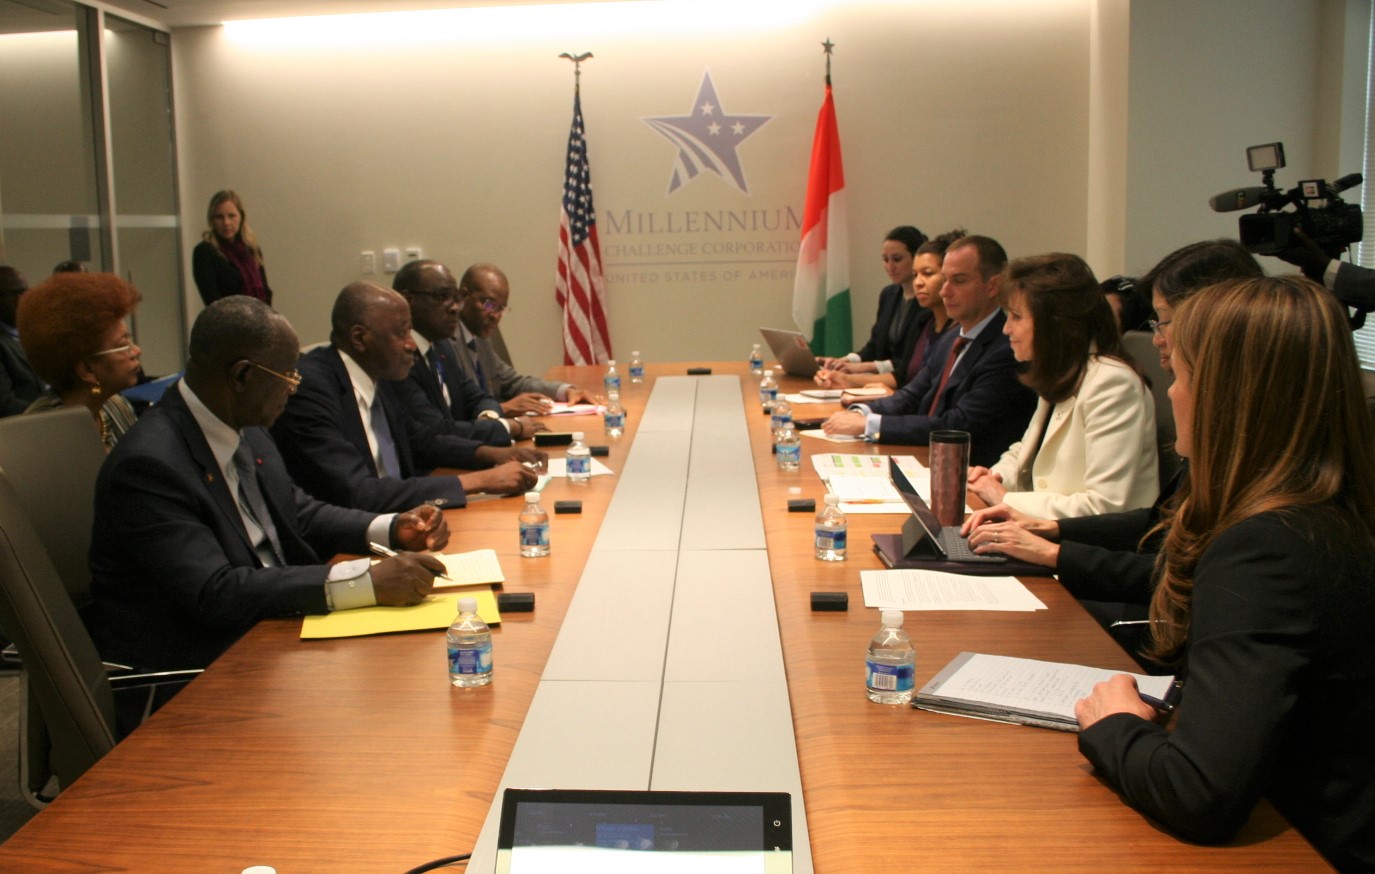 Retour en images sur le séjour fructueux  du Premier Ministre Amadou Gon Coulibaly à Washington. DC 